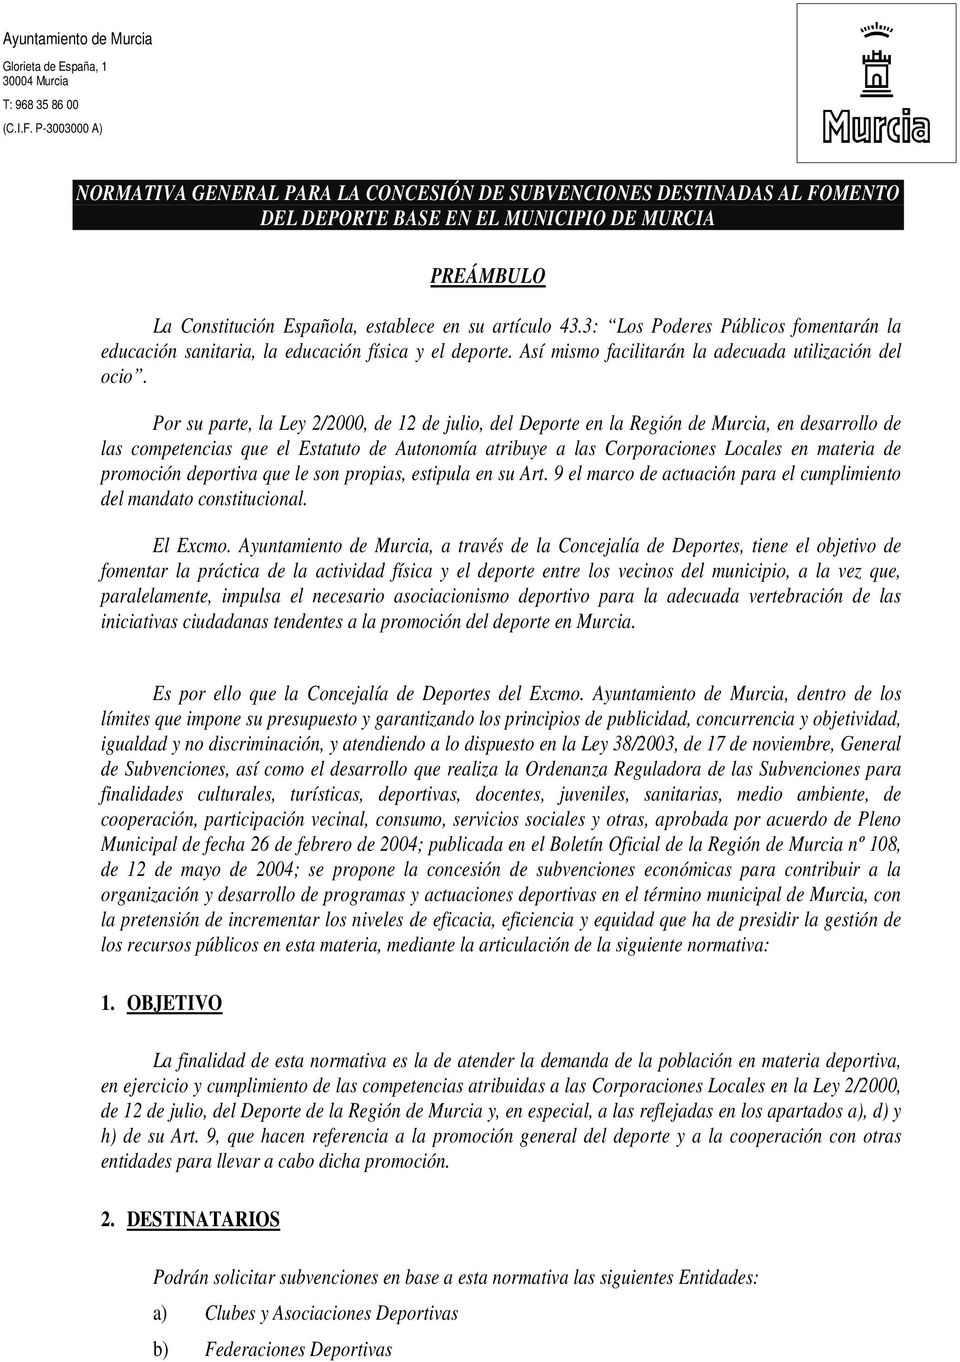 Por su parte, la Ley 2/2000, de 12 de julio, del Deporte en la Región de Murcia, en desarrollo de las competencias que el Estatuto de Autonomía atribuye a las Corporaciones Locales en materia de